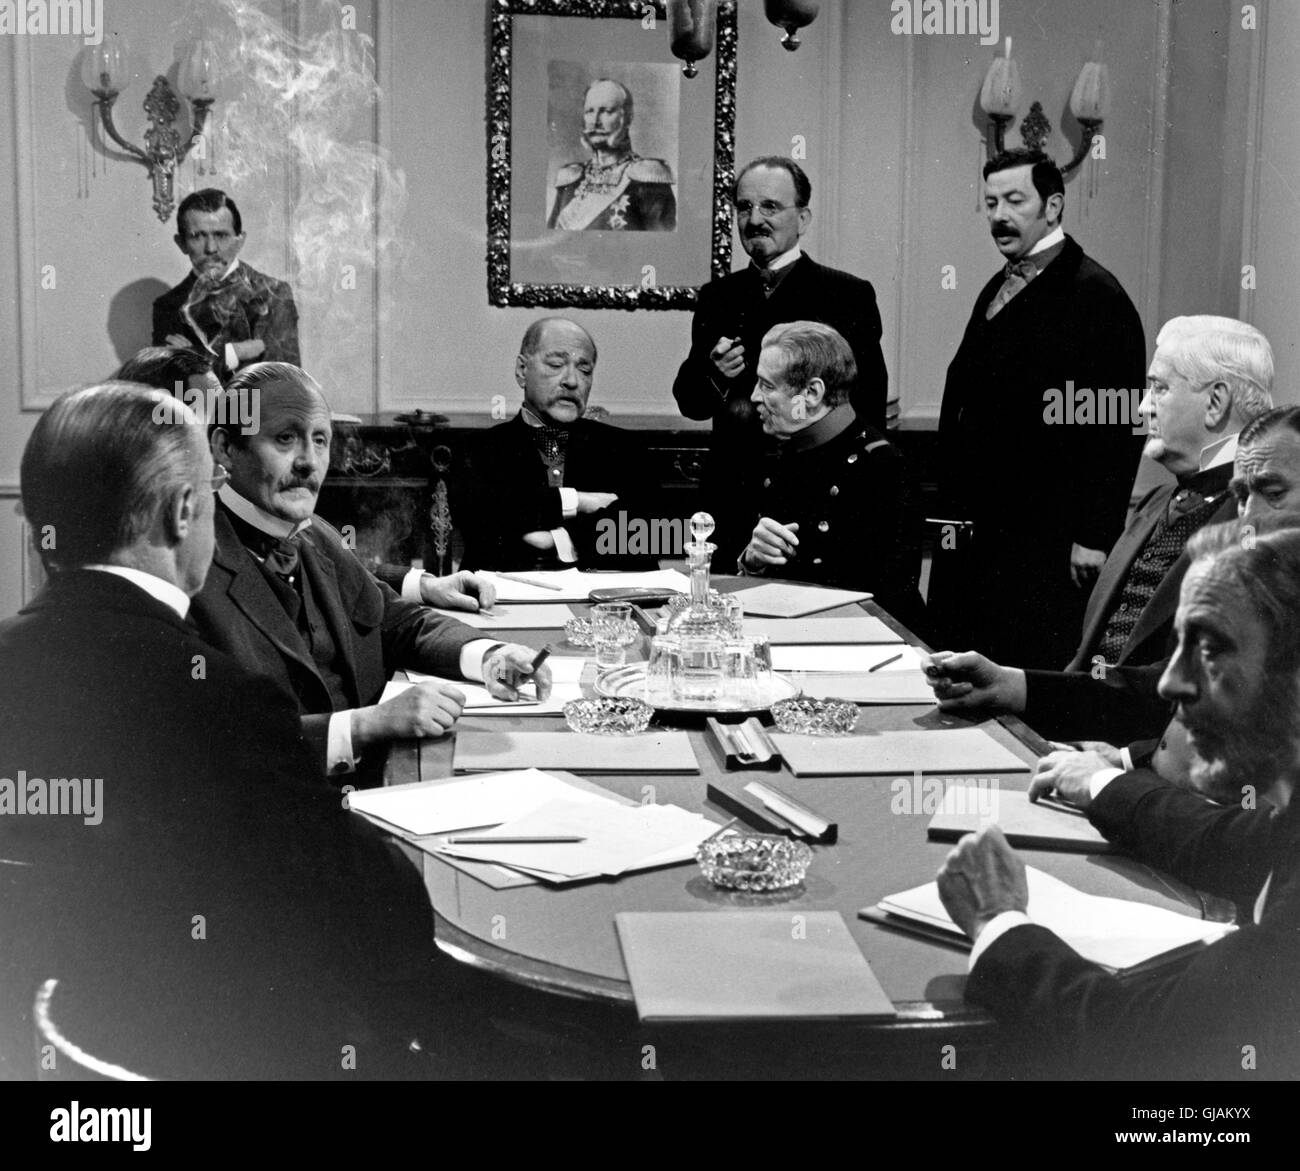 Preußen über alles... Bismarcks deutsche Einigung, Fernsehserie, Deutschland 1971, Darsteller: Heinz Klevenow (Mitte) Stock Photo